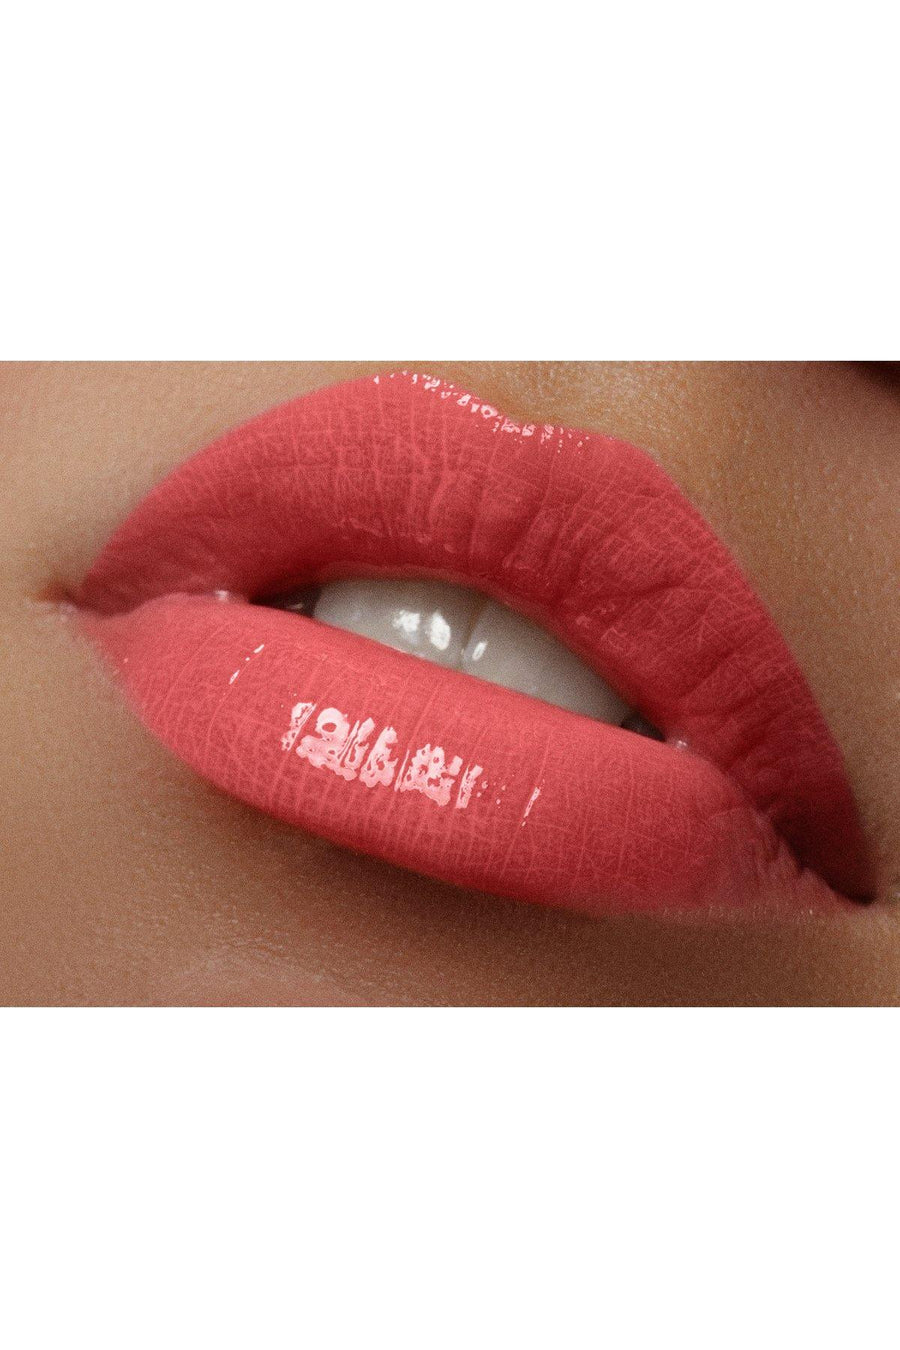 Lip Gloss #9 - Apple Fatal - Blend Mineral Cosmetics